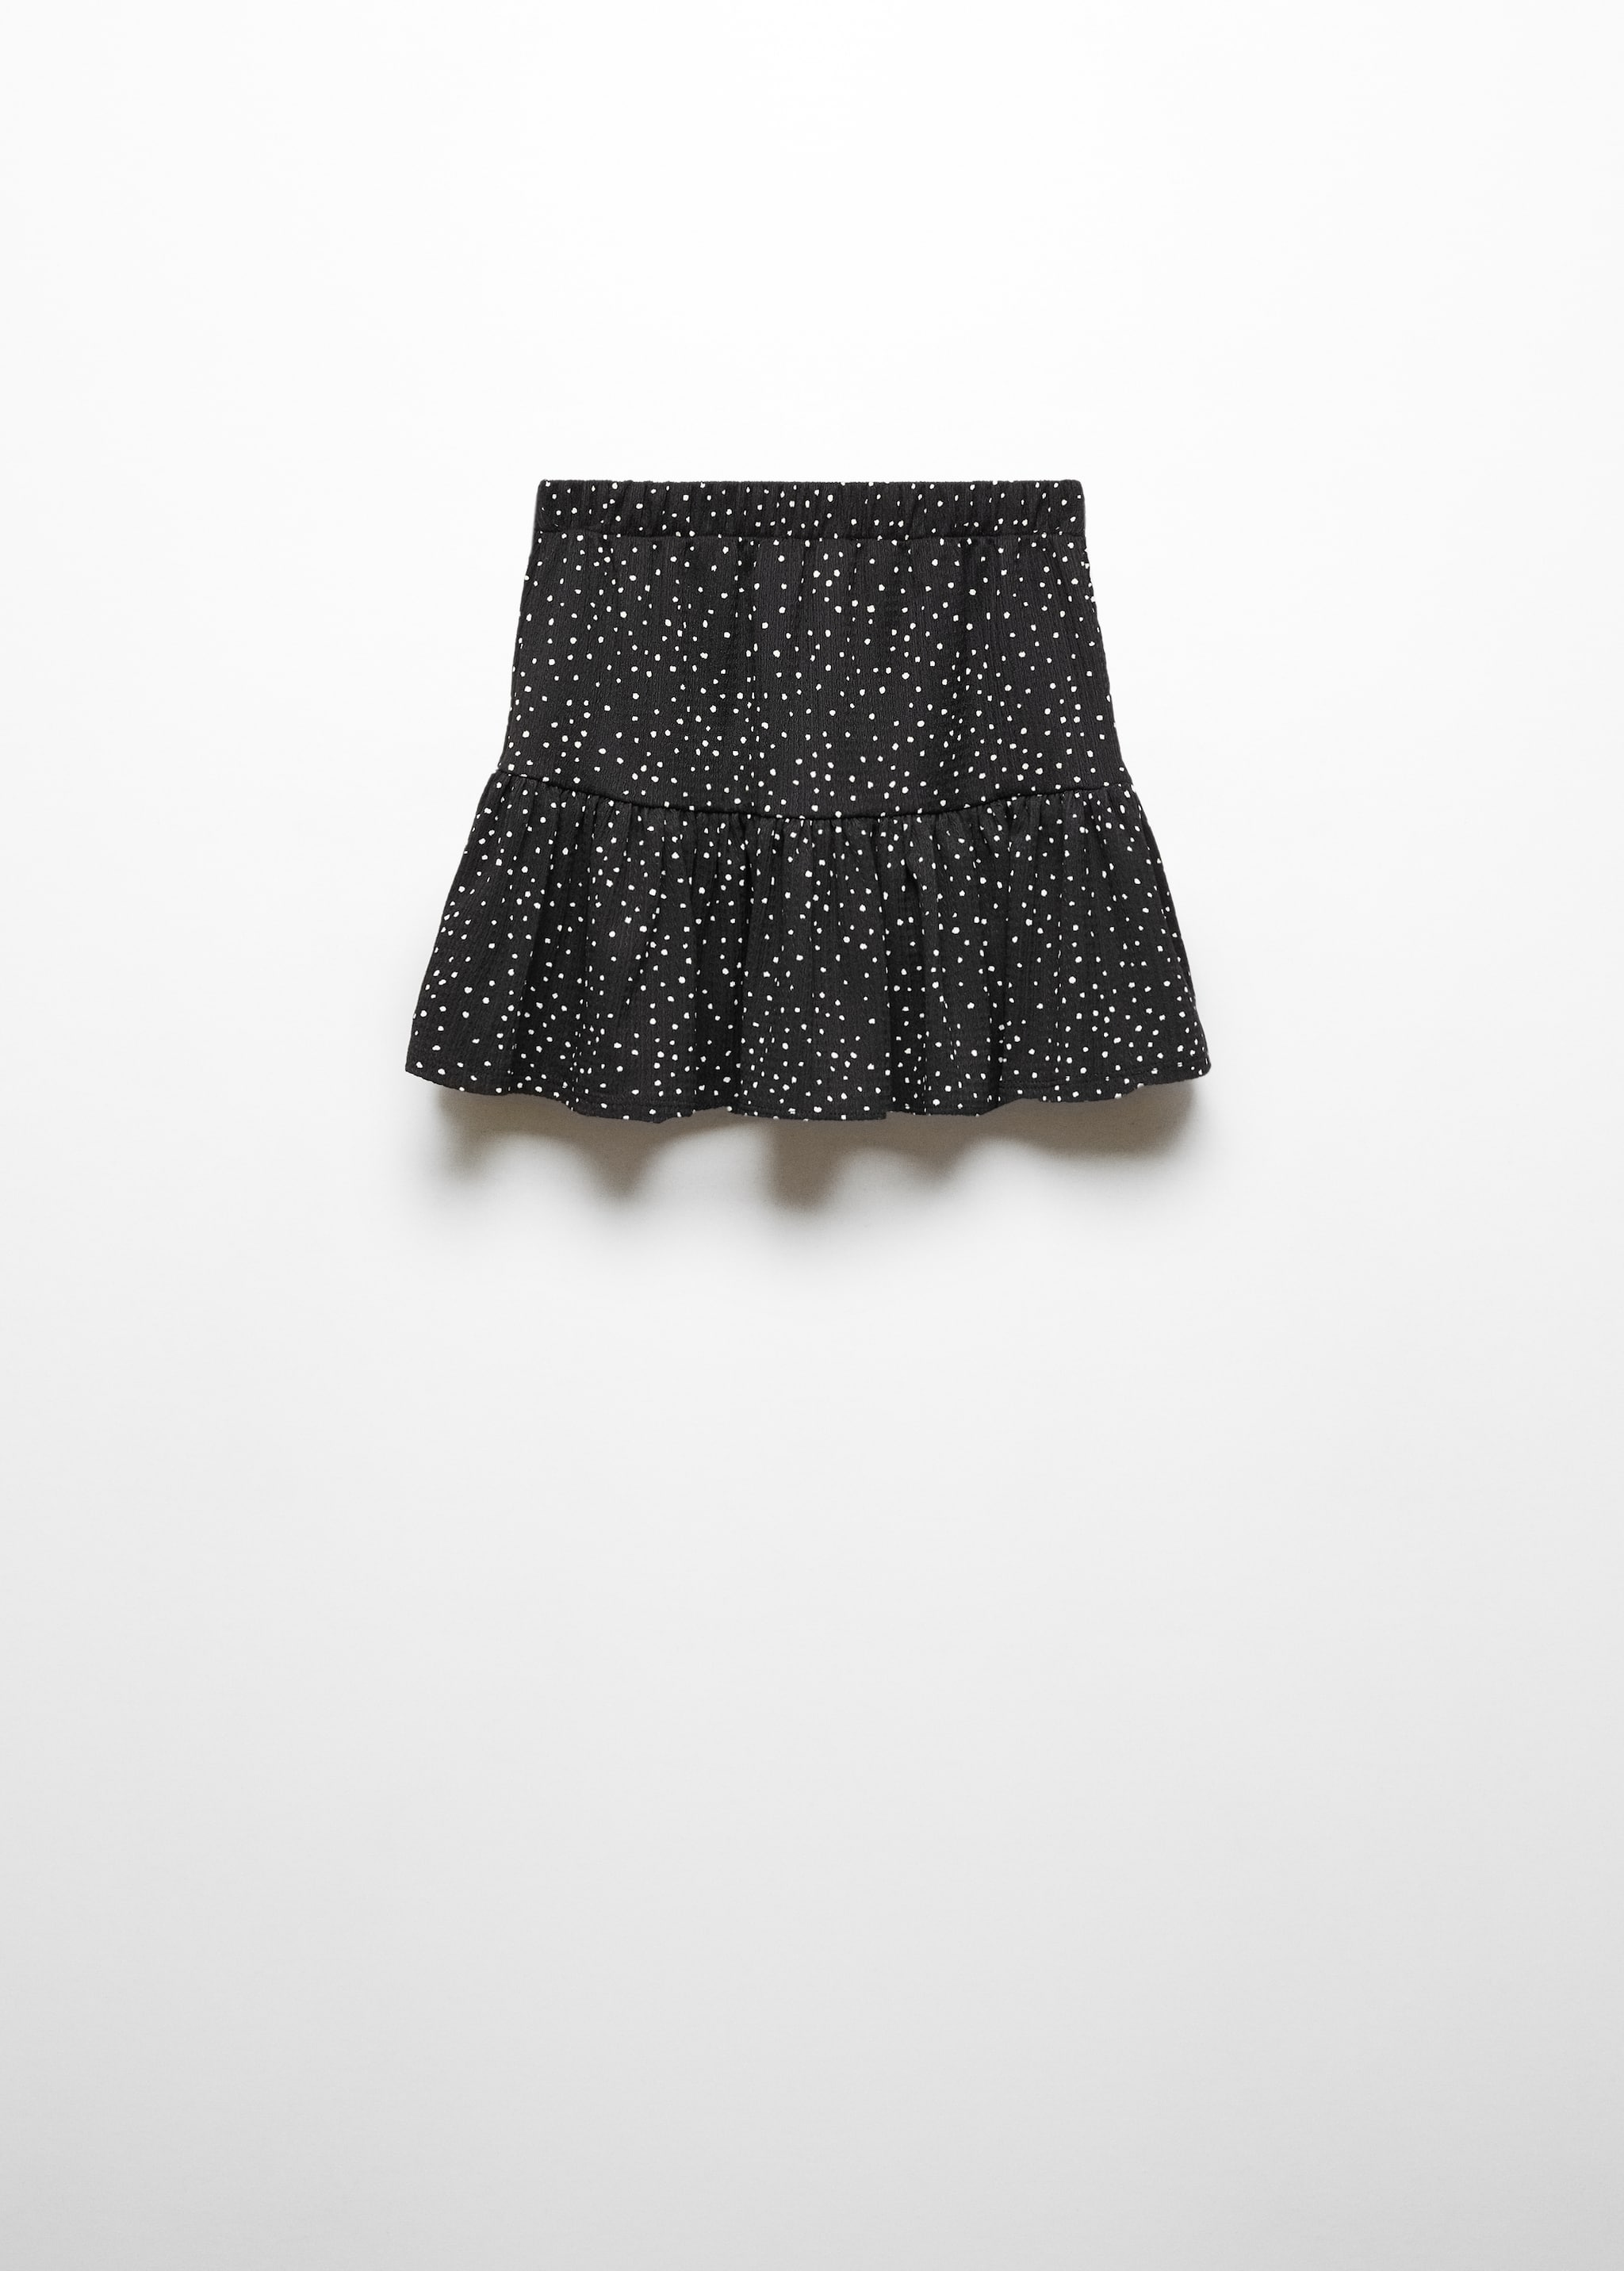 Ruffled polka dot skirt - Reverse of the article